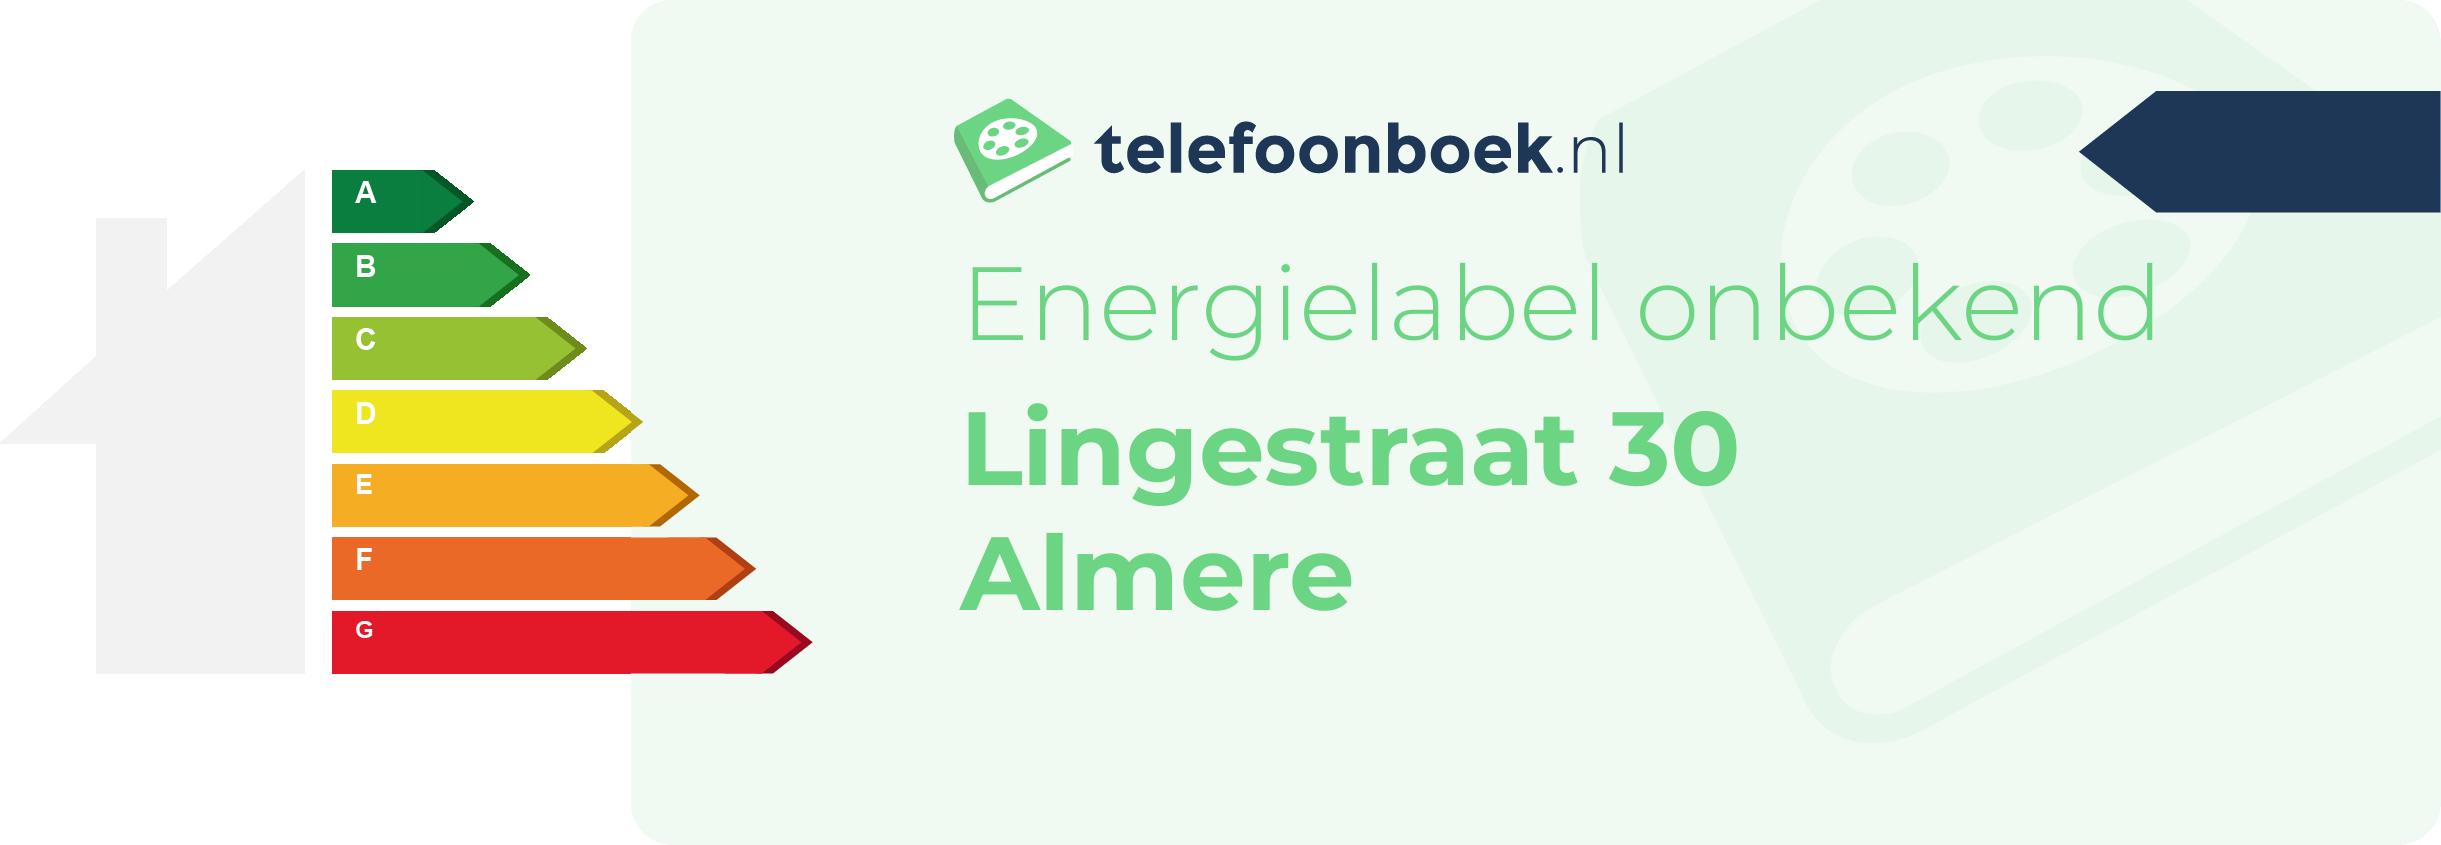 Energielabel Lingestraat 30 Almere